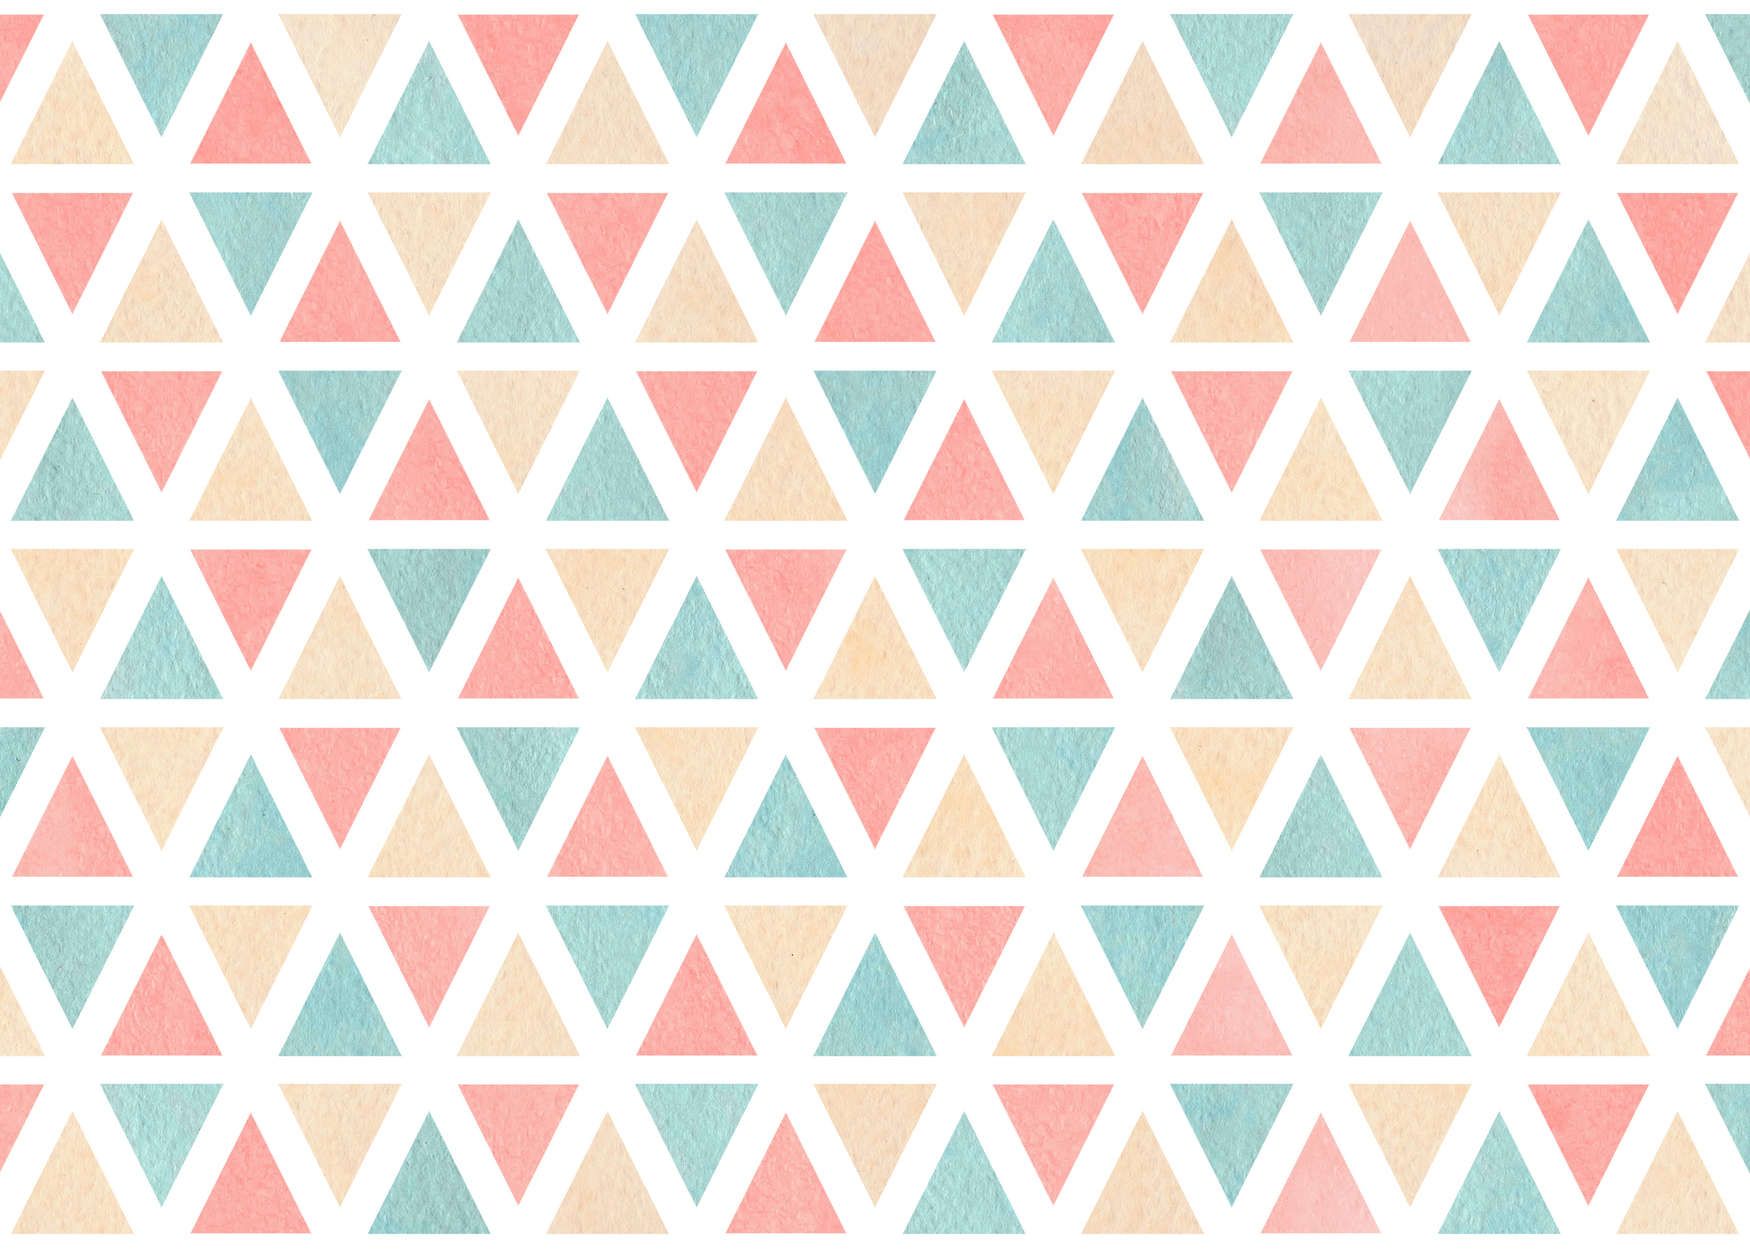             Fototapete grafisches Muster mit bunten Dreiecken – Glattes & perlmutt-schimmerndes Vlies
        